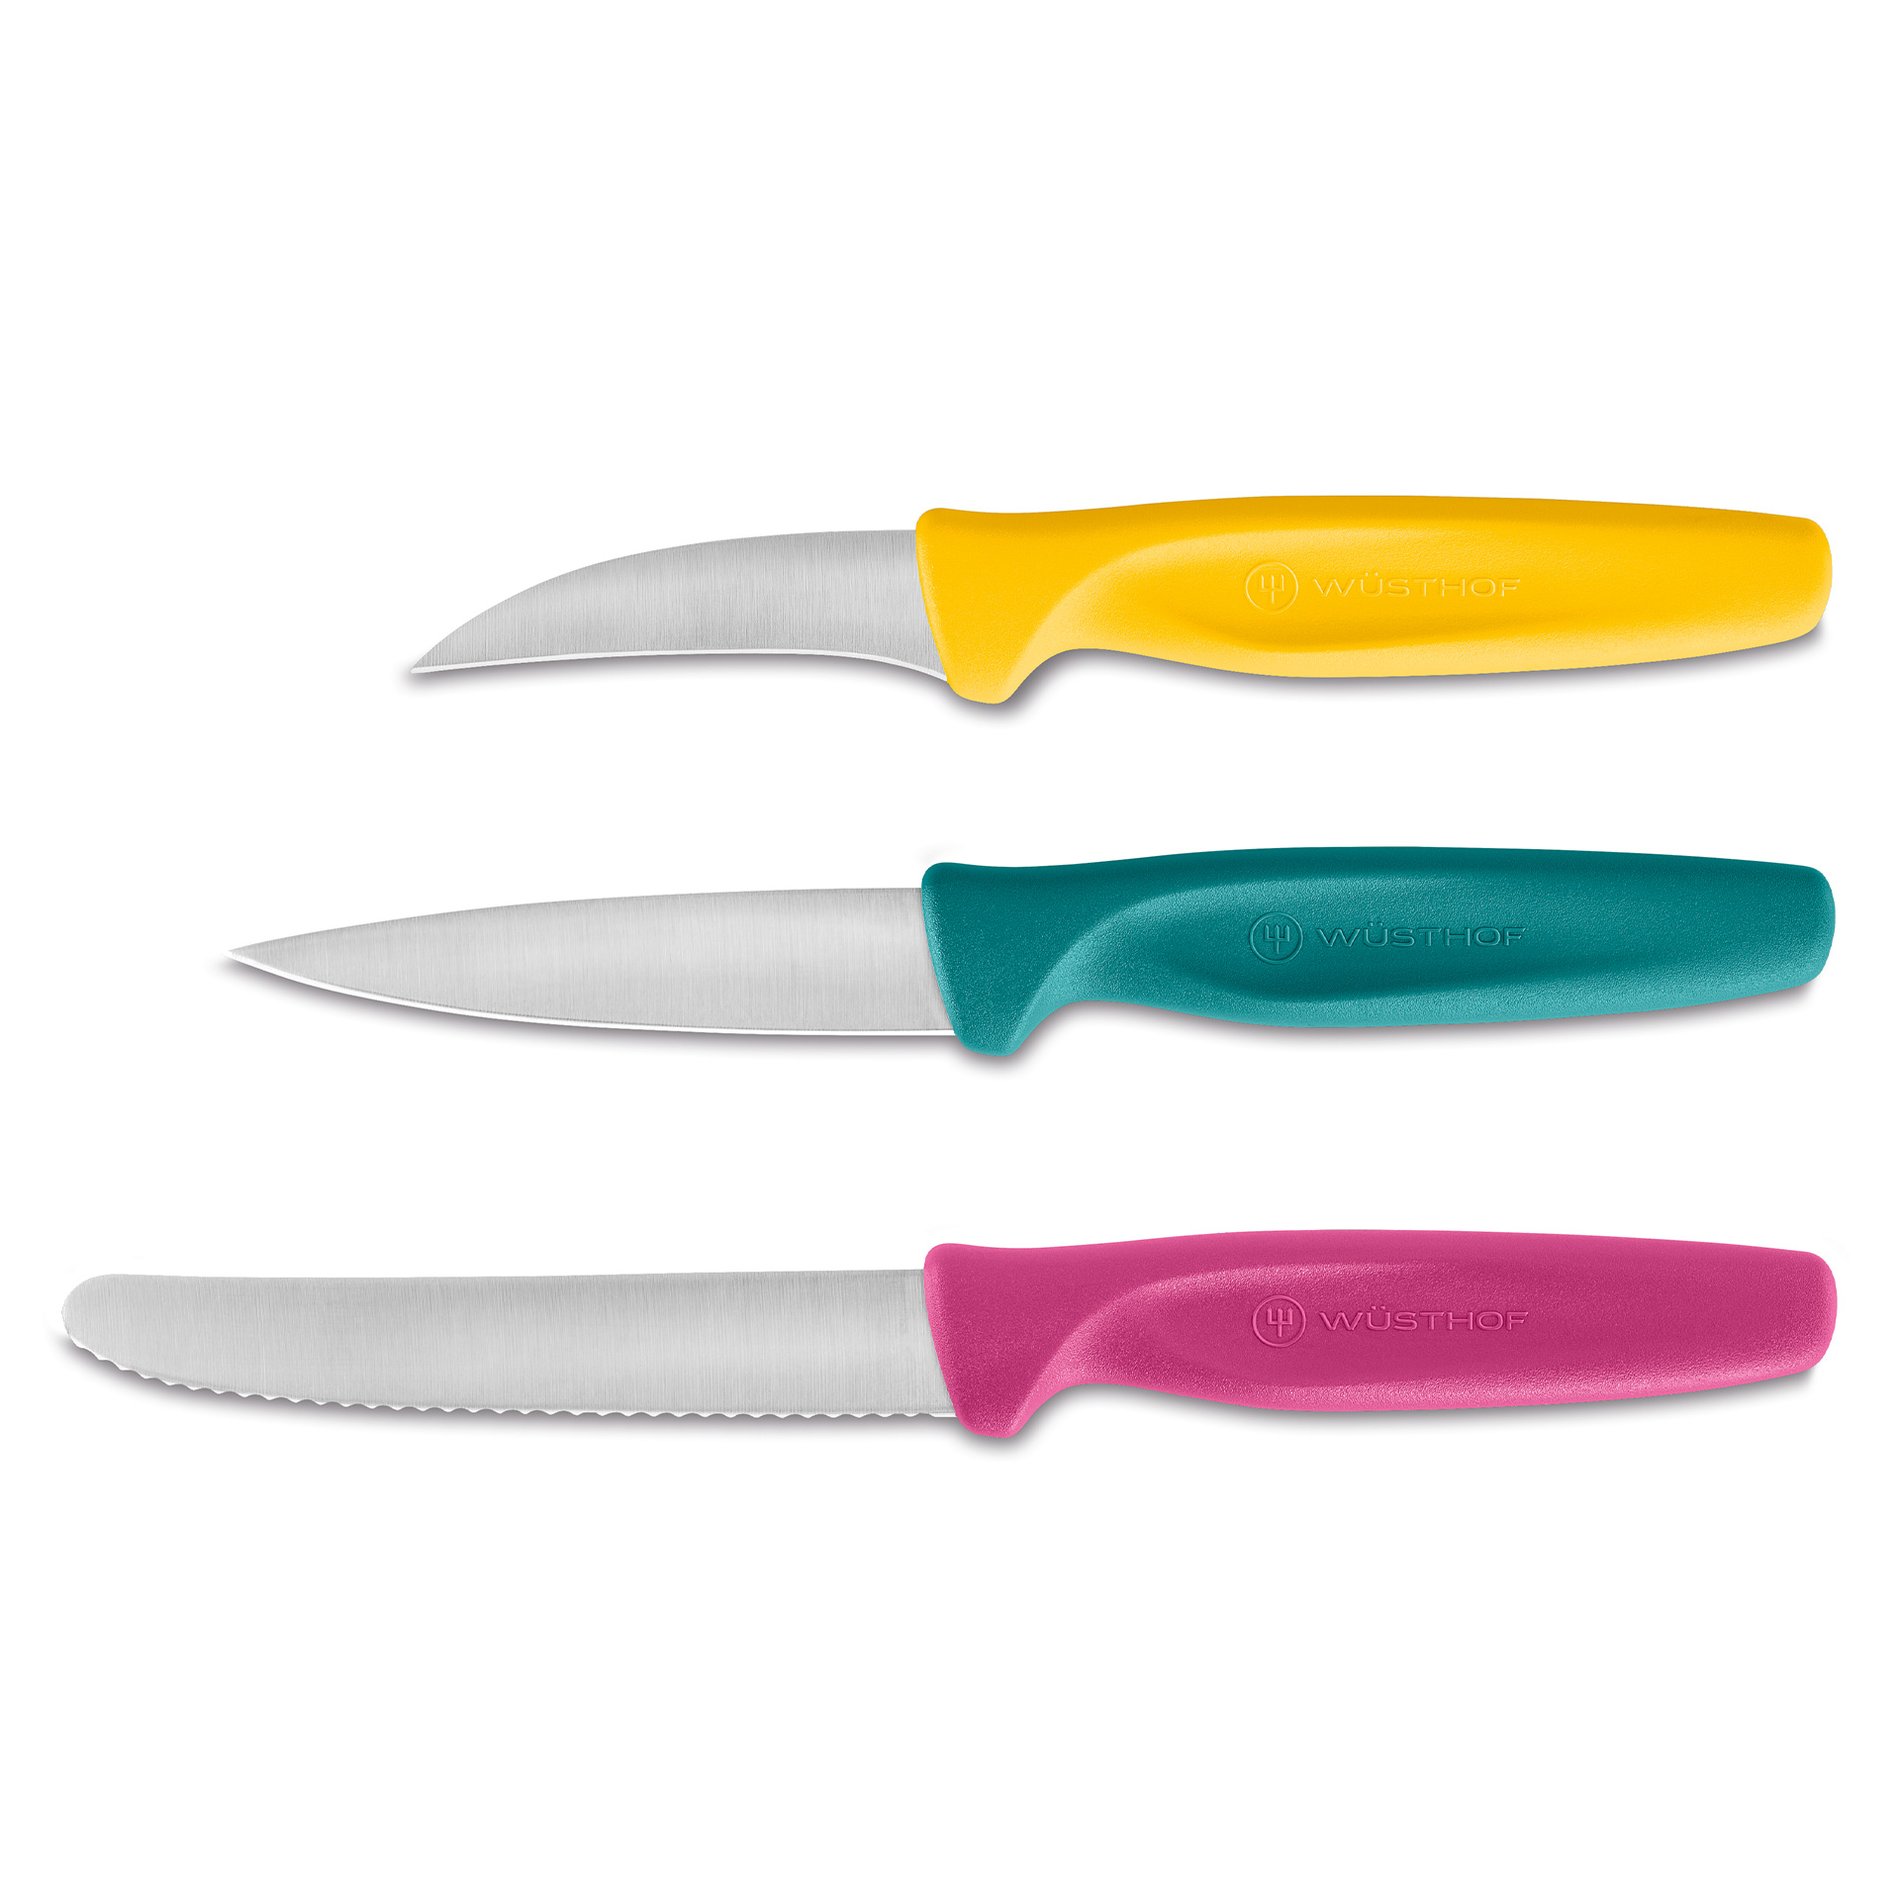 Sada 3 vícebarevných nožů na zeleninu CREATE COLLECTION - WÜSTHOF (nové)